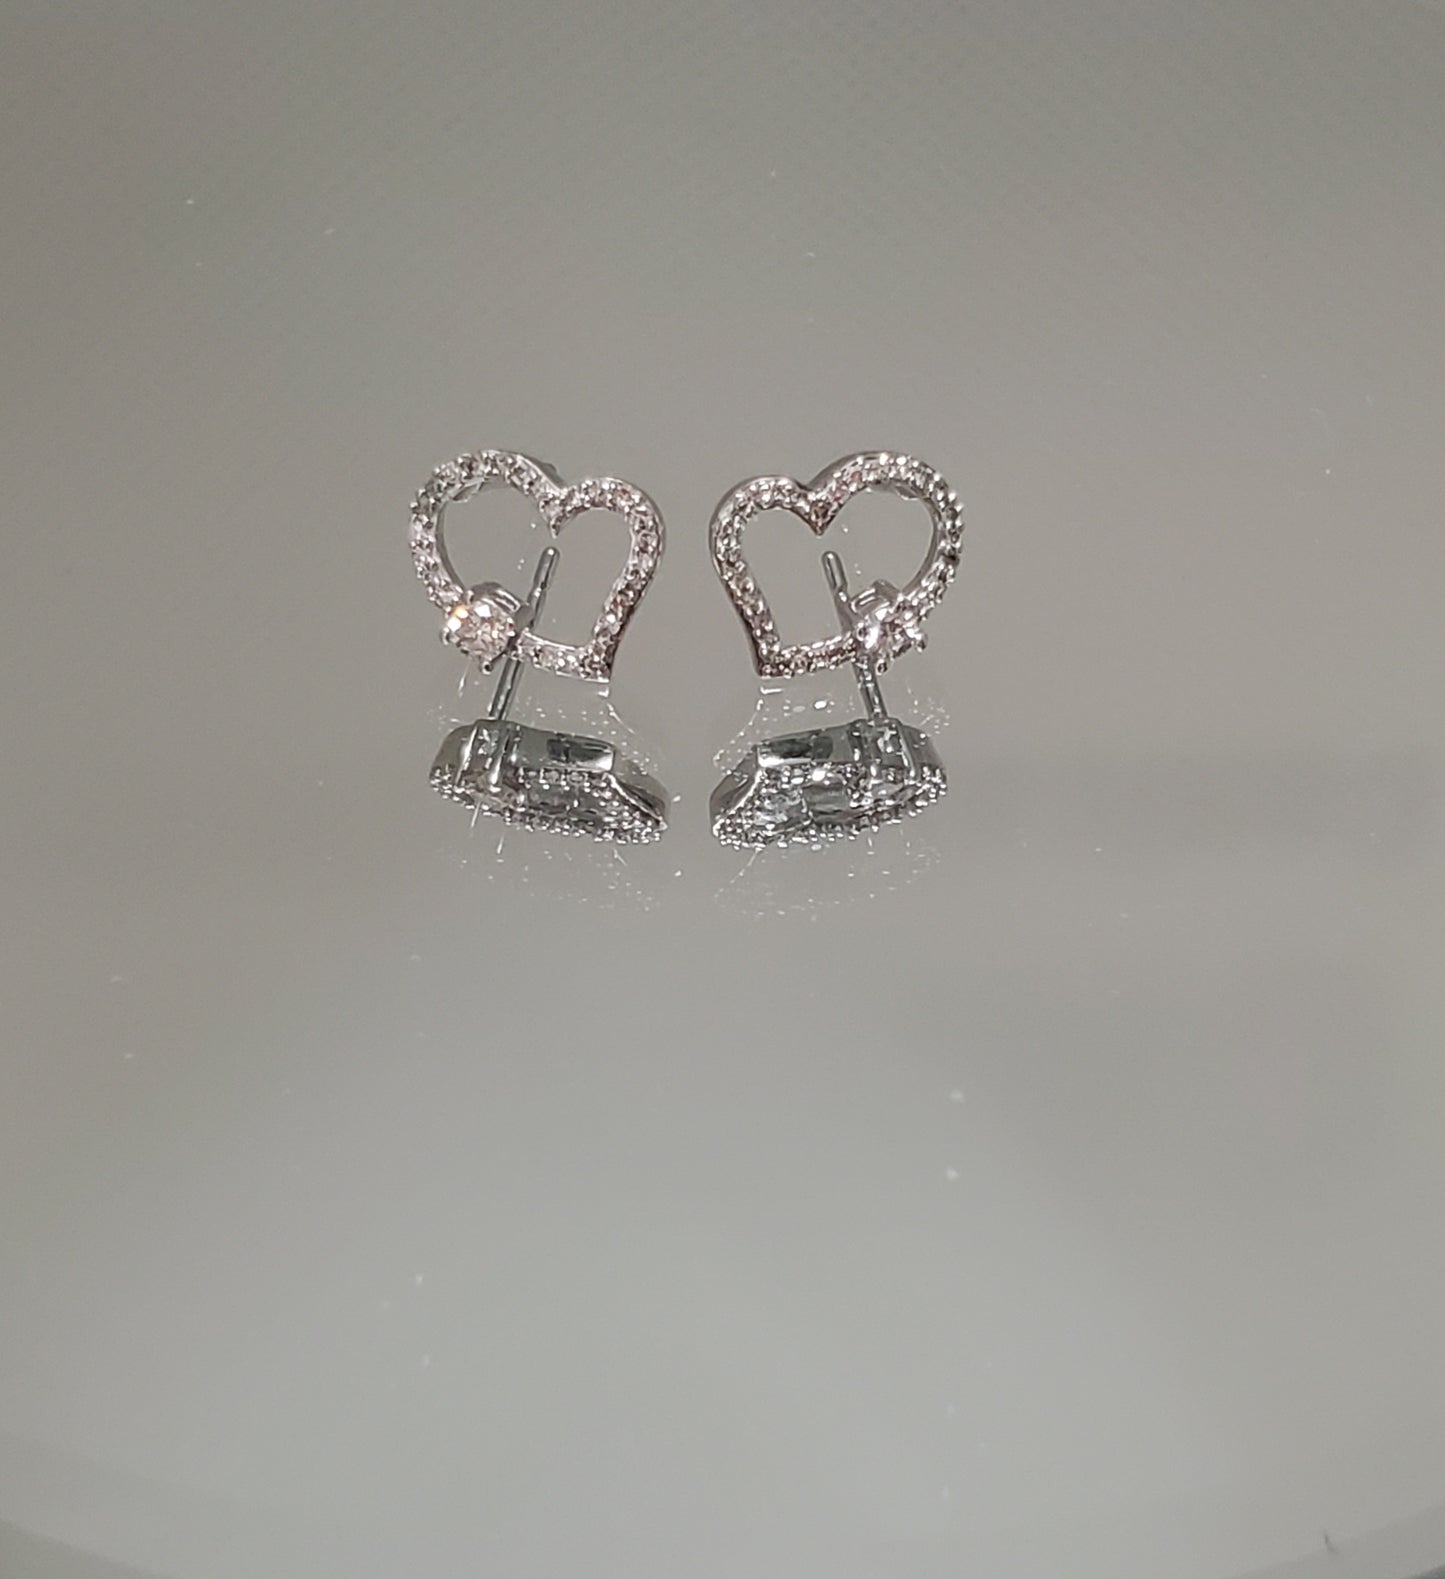 10K White Gold Heart Shaped Diamond Earrings